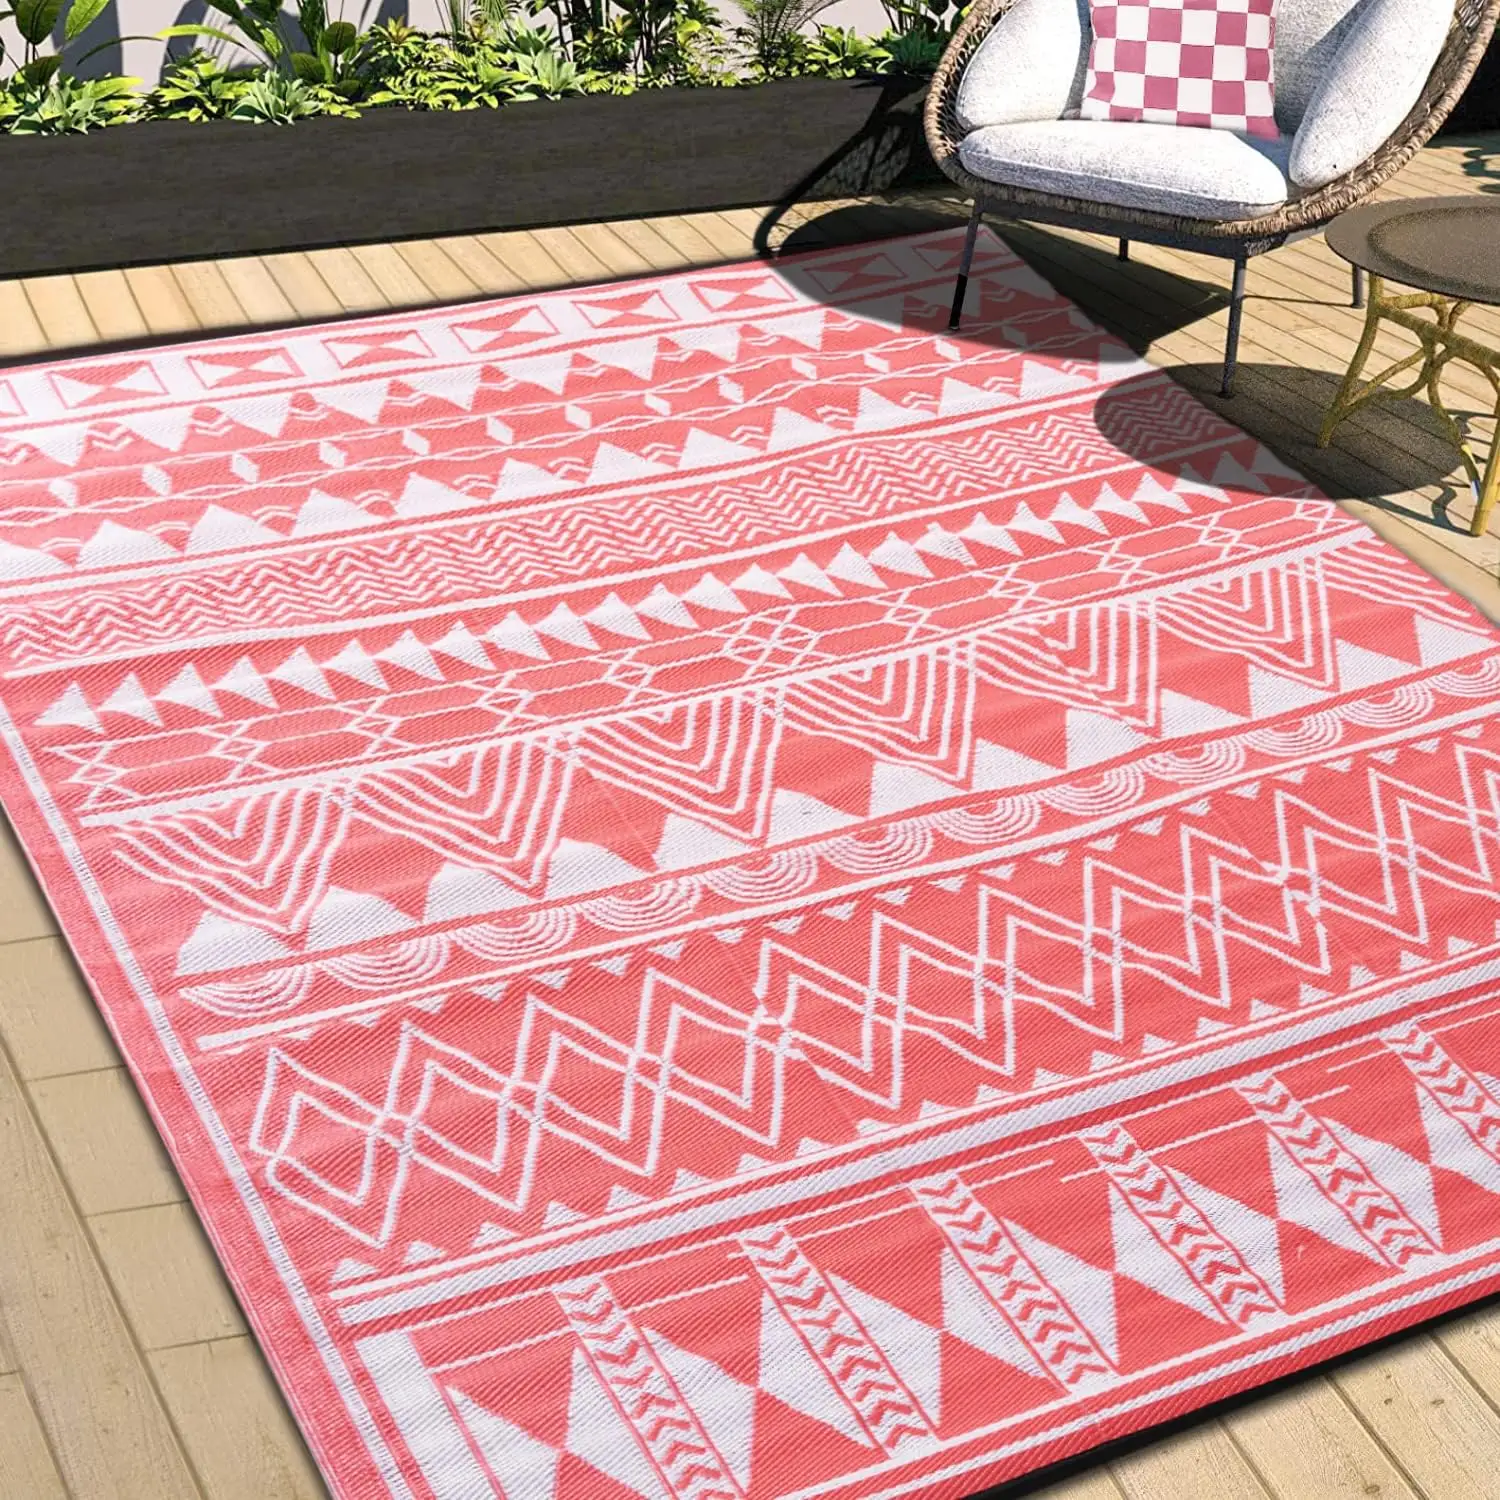 Portable PP matériel grands tapis imperméables réversible extérieur en plastique tapis de paille pour plage Camping pique-nique pour Patio